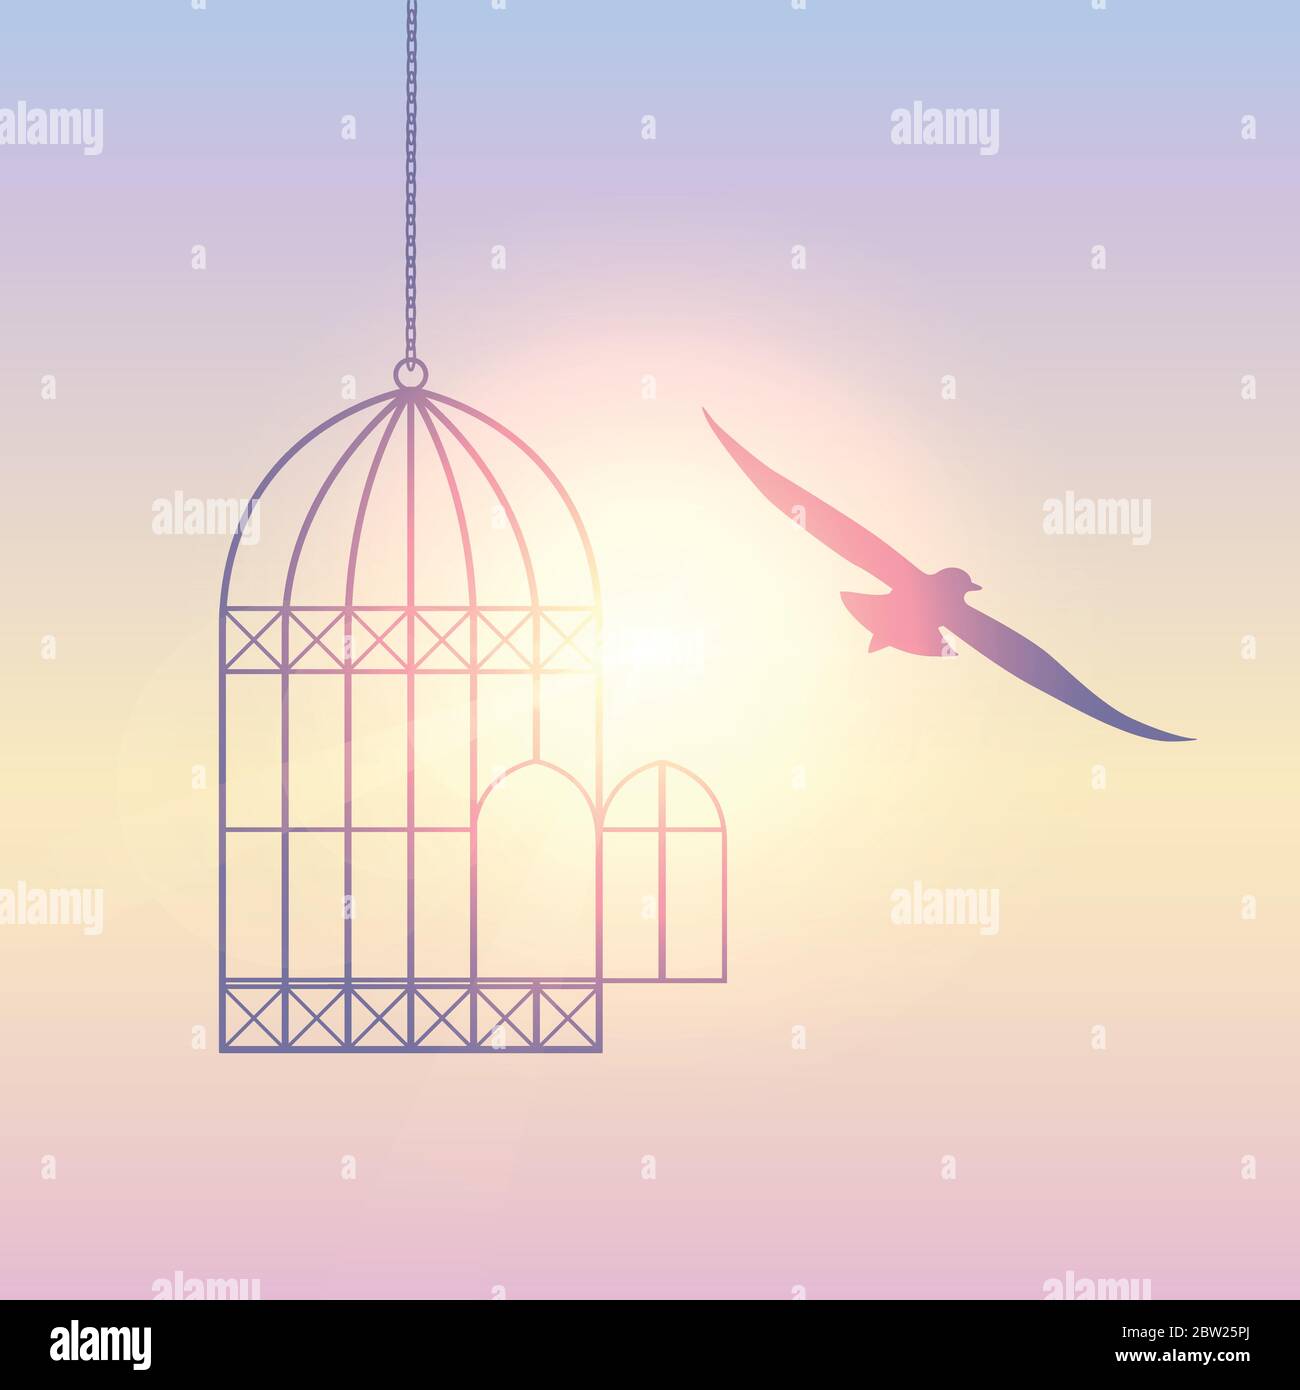 El pájaro vuela fuera de la jaula en la ilustración EPS10 del vector del cielo soleado Ilustración del Vector